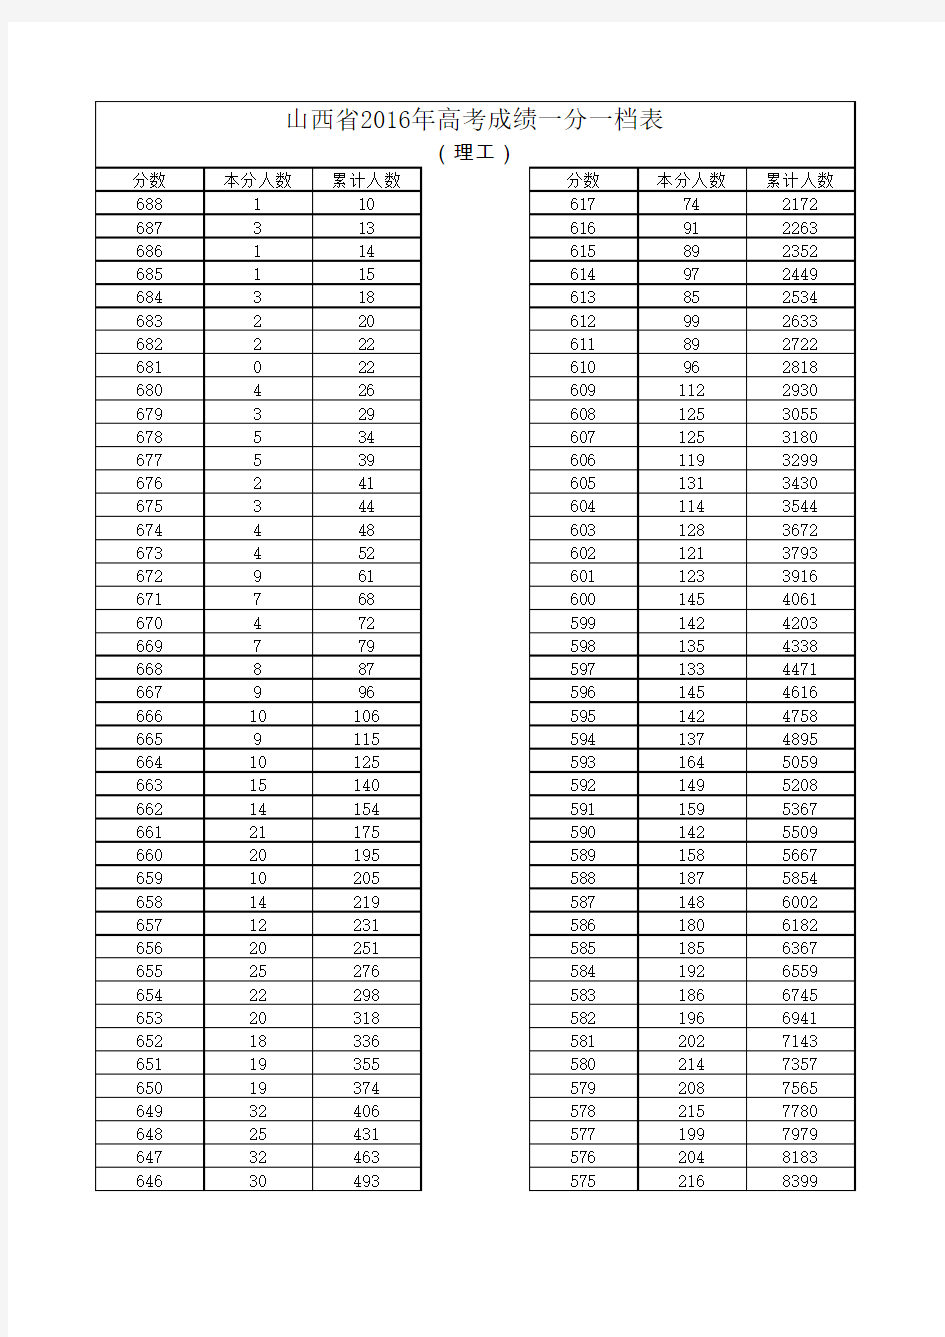 山西省2013-2016年高考分数段统计表